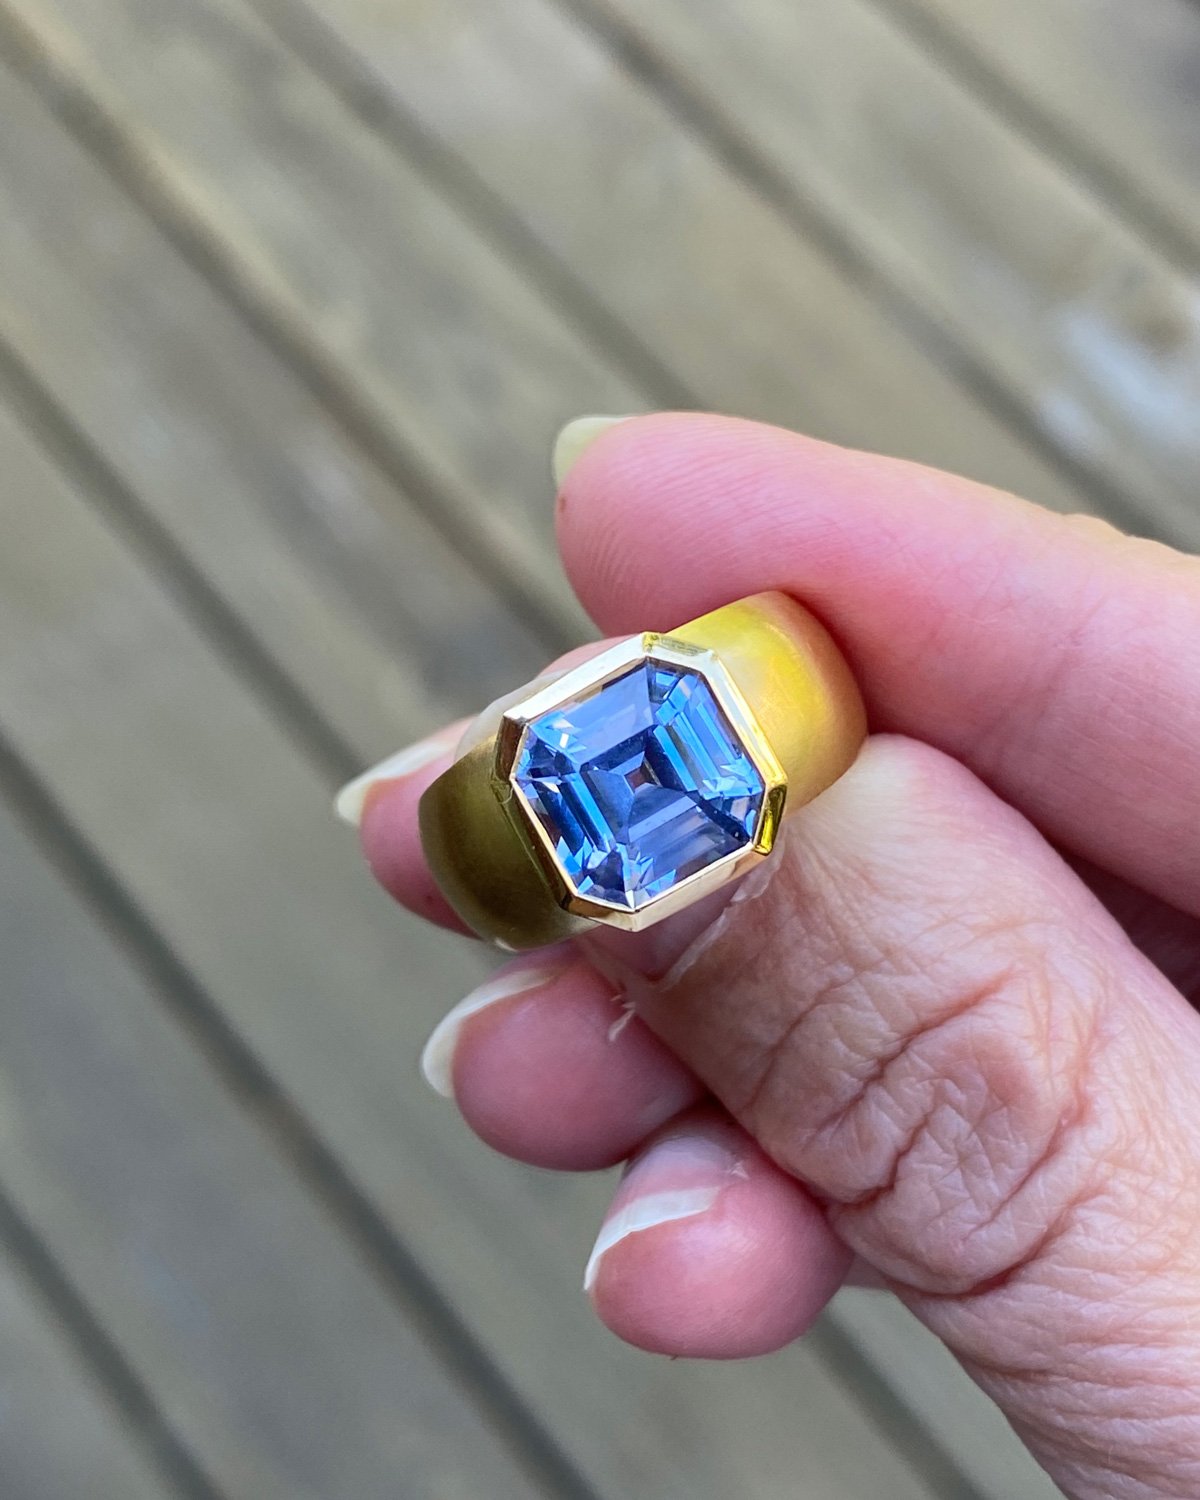 22k Gold Ring Women 22kt Indian Handmade Ring for Engagement Anniversary  Gift | eBay